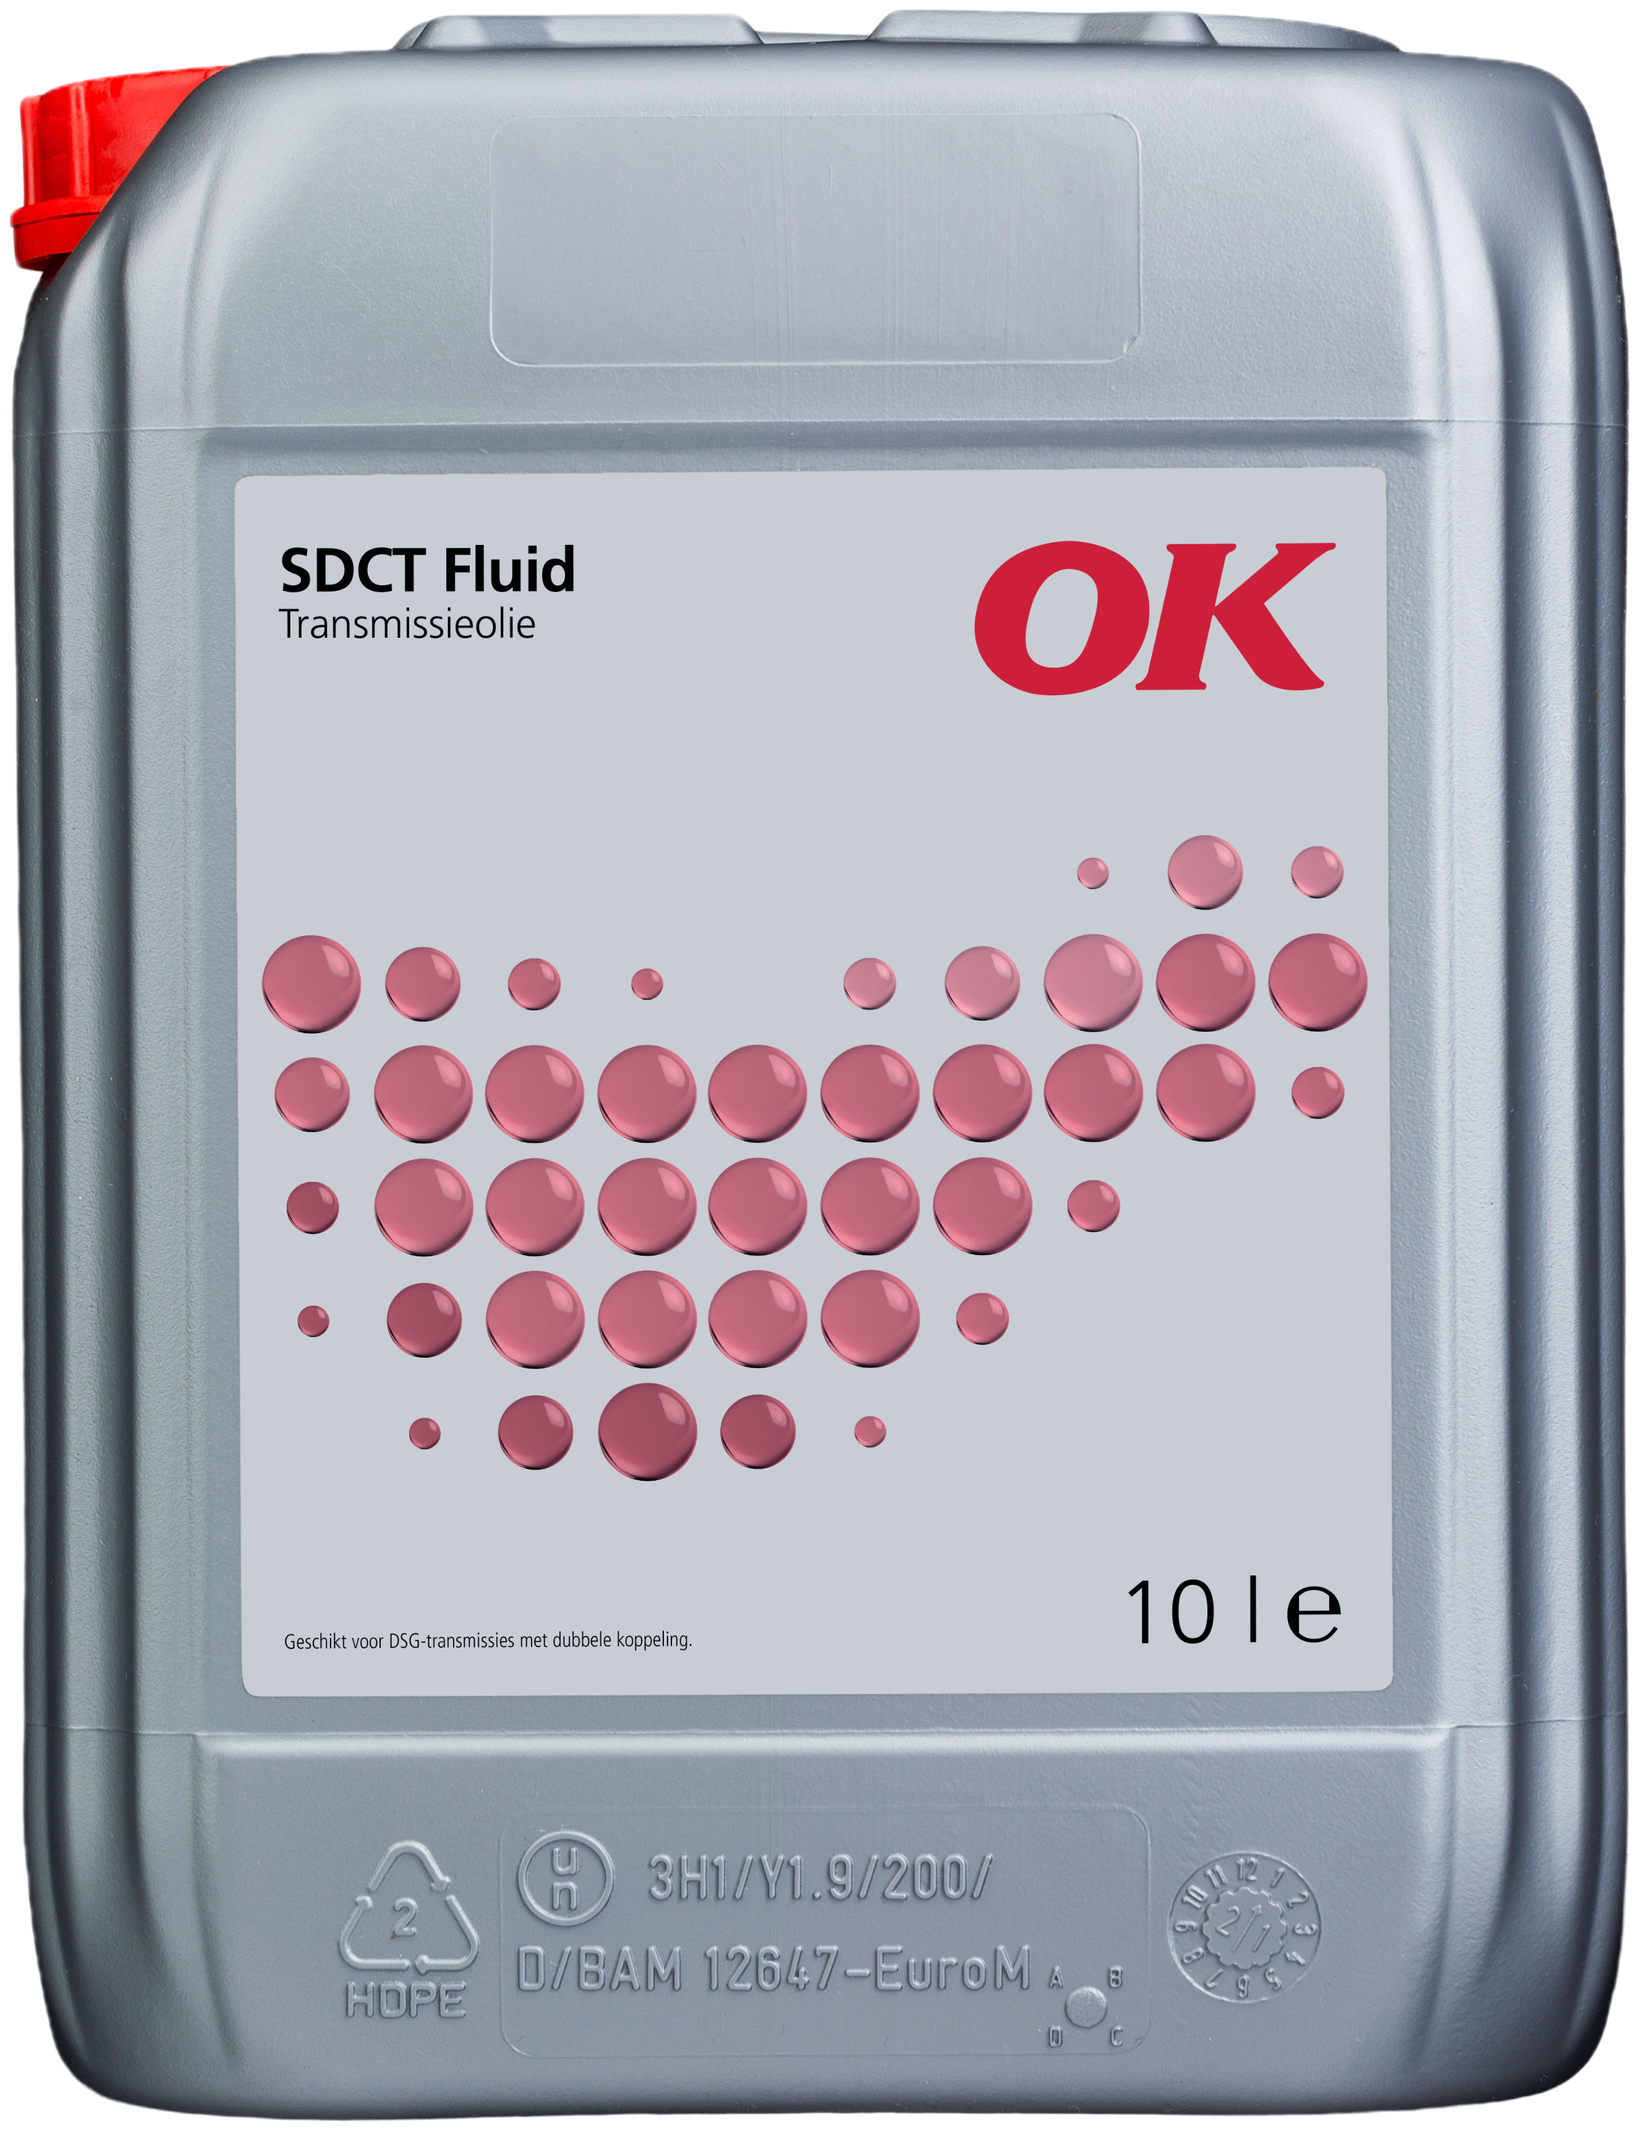 O2261-10 OK SDCT Fluid is een synthetische all purpose 'dubbele koppeling' transmissievloeistof, gebaseerd op hoogwaardige synthetische basisoliën in combinatie met geoptimaliseerde additieven.